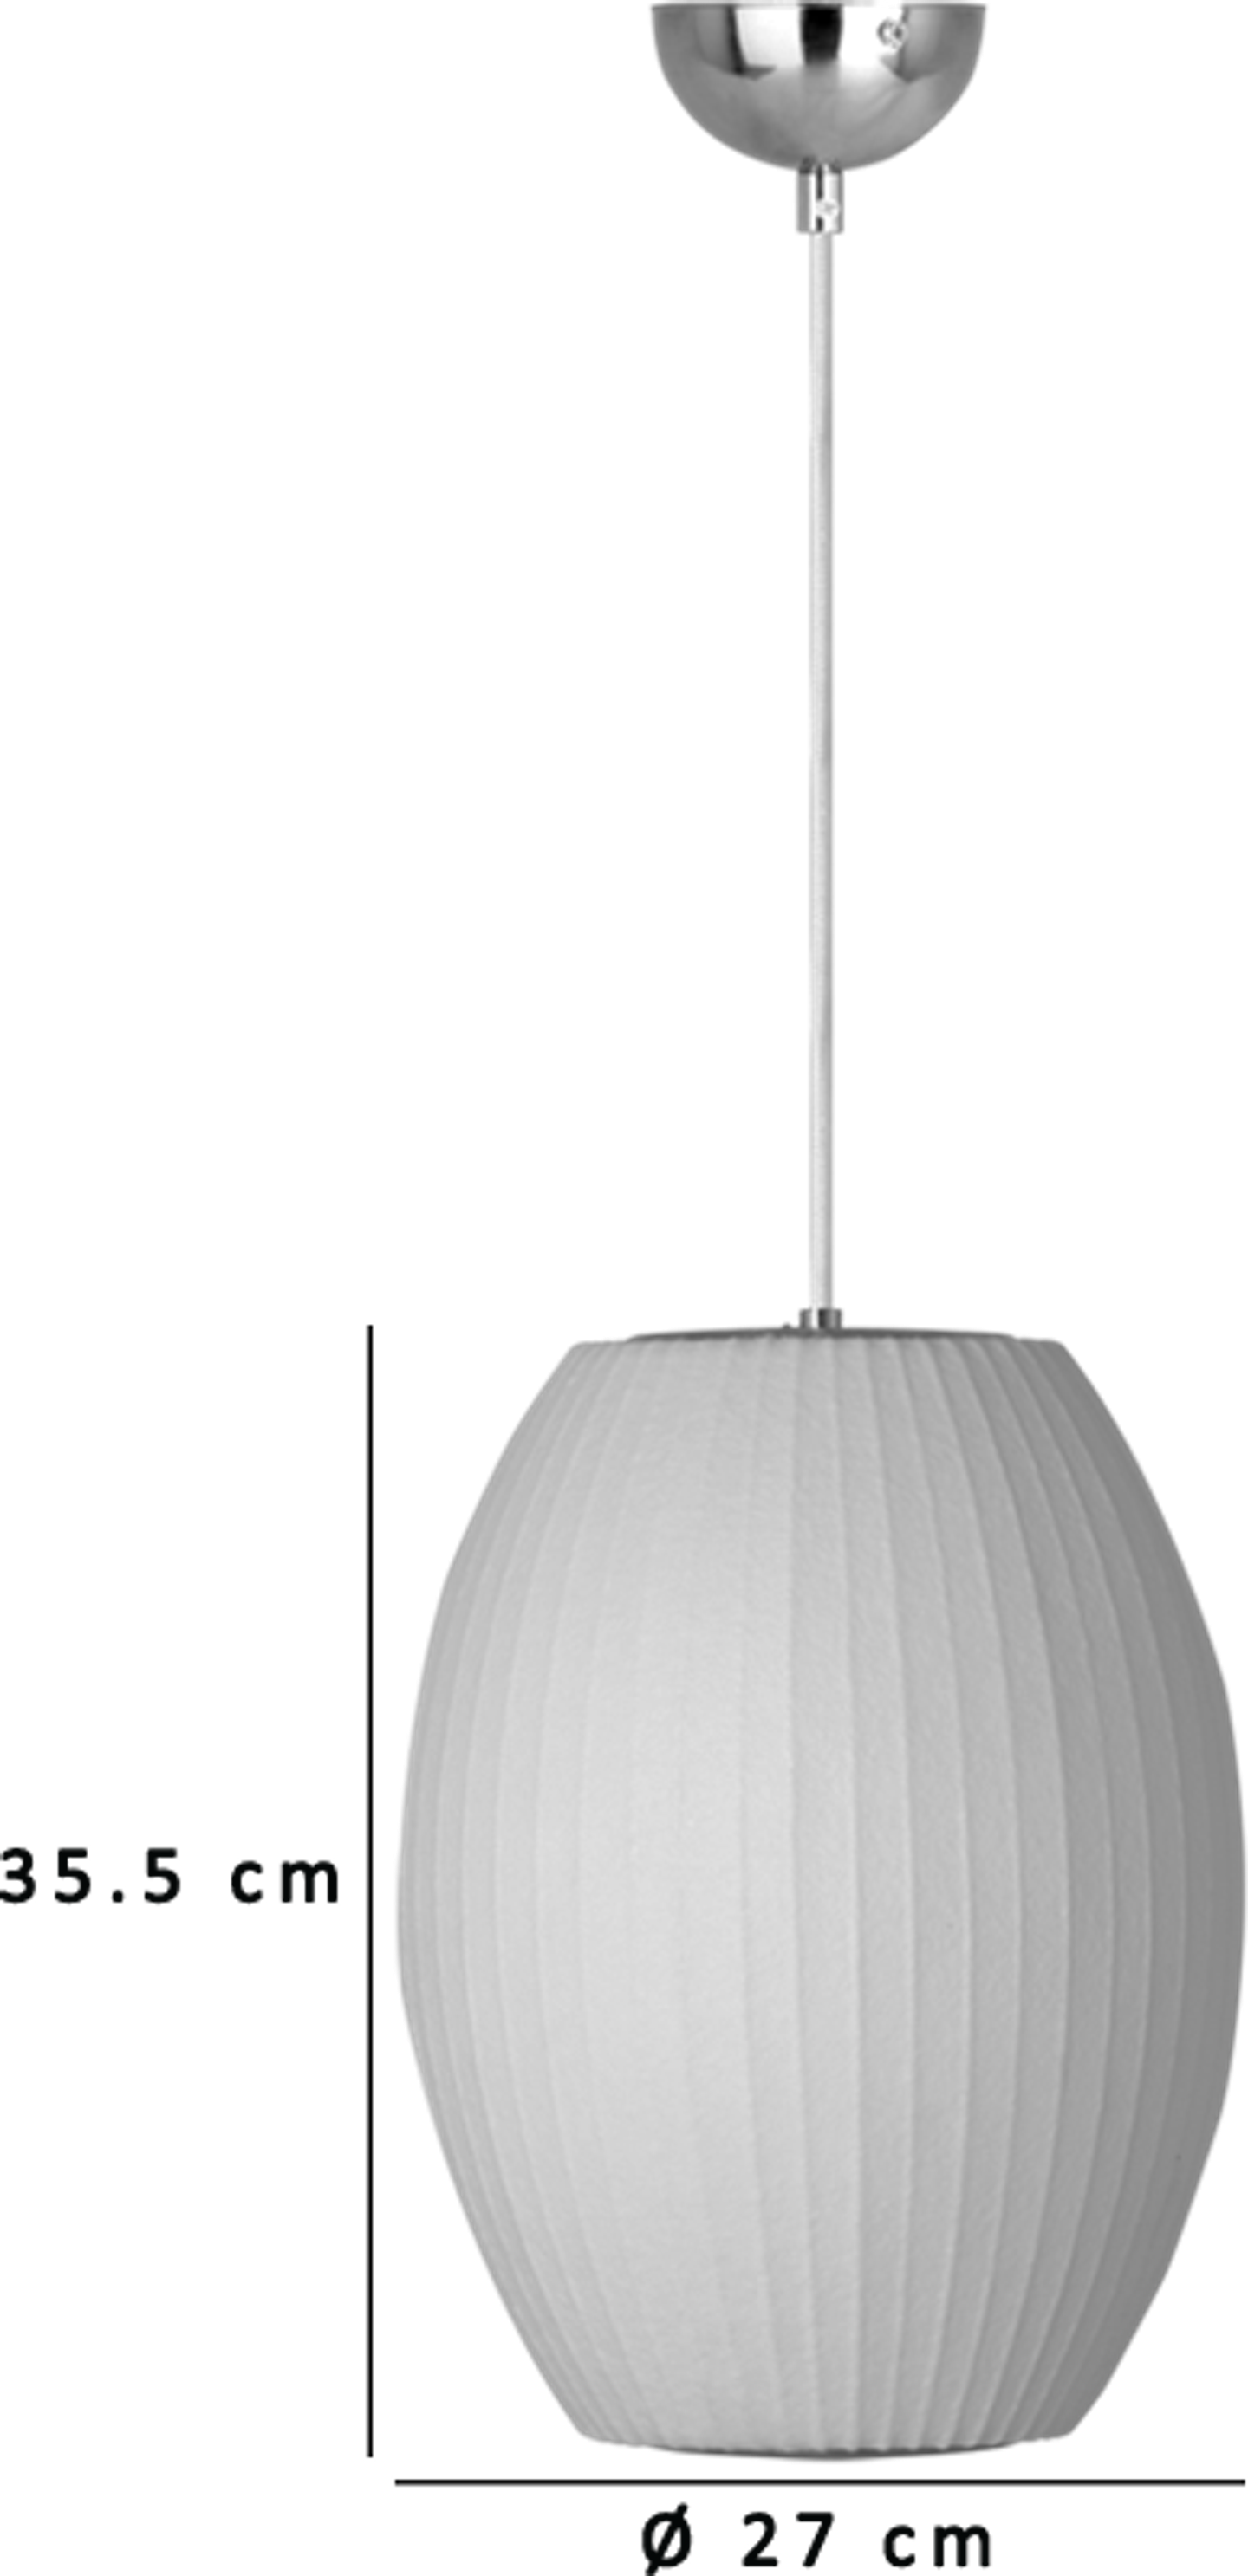 Boble Lamp -sigar Small image.